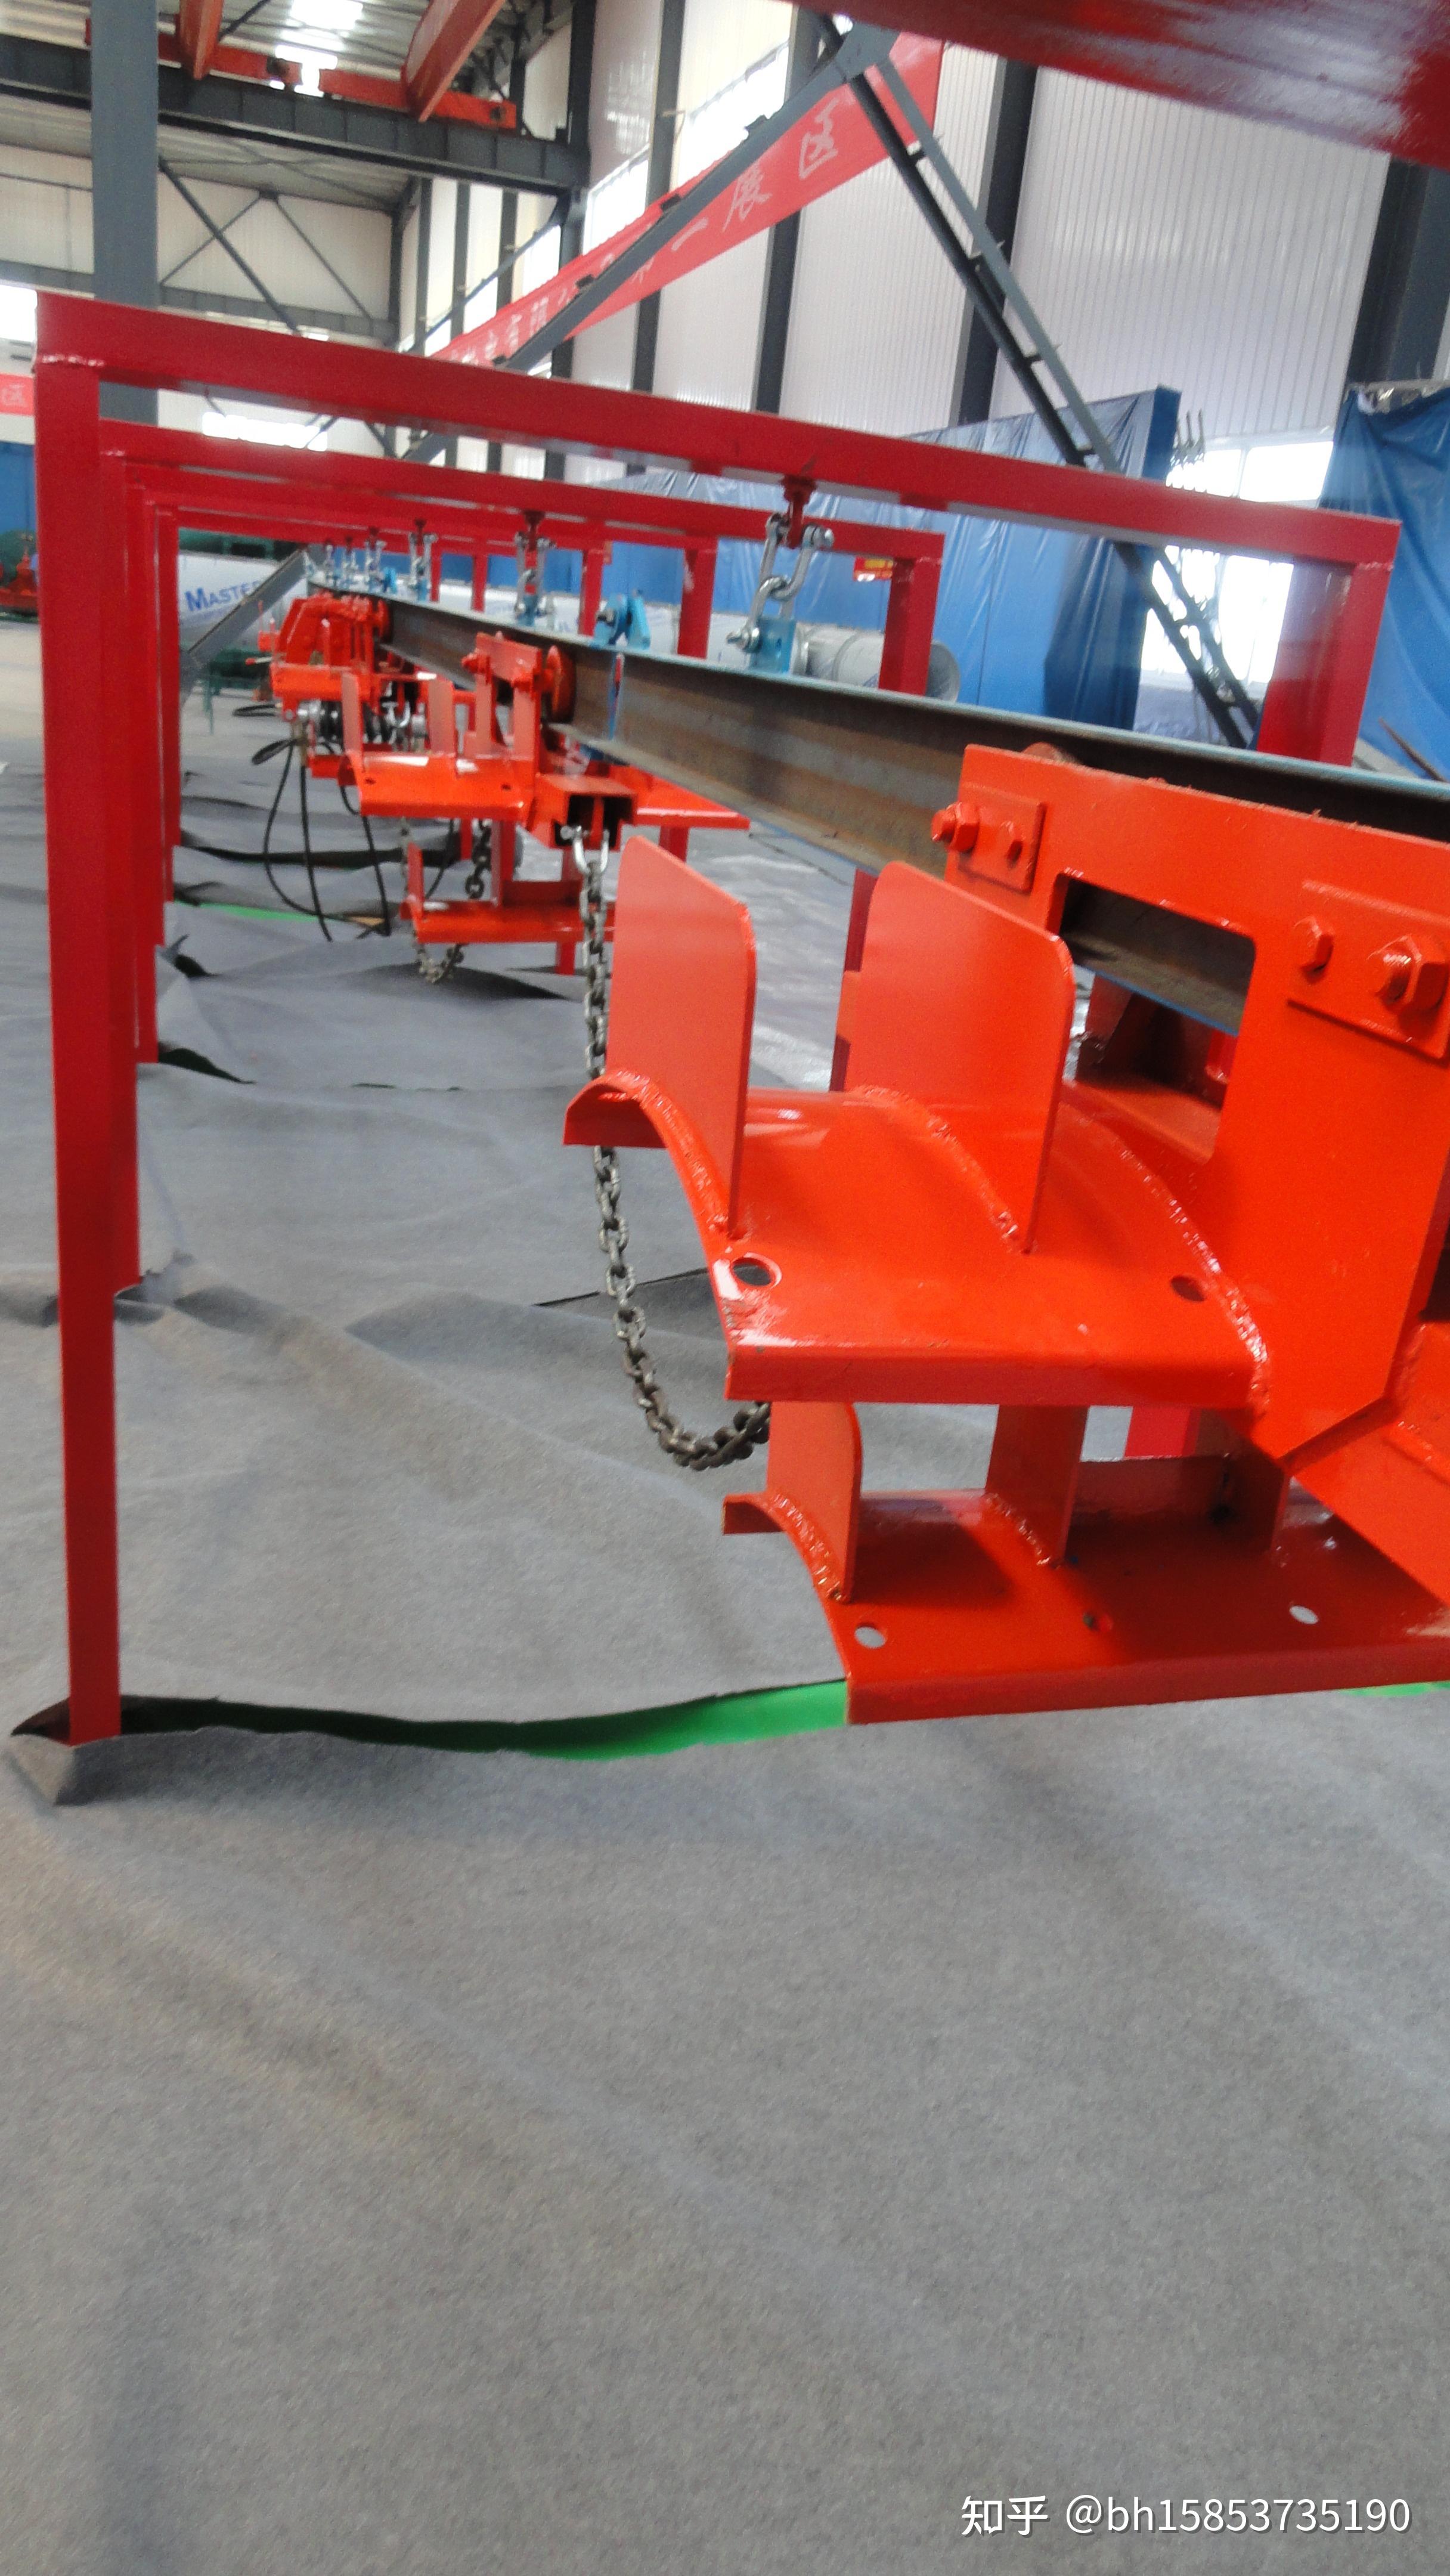 主要技术参数矿用液压电缆拖挂单轨吊是用于煤矿综采工作面顺槽电缆